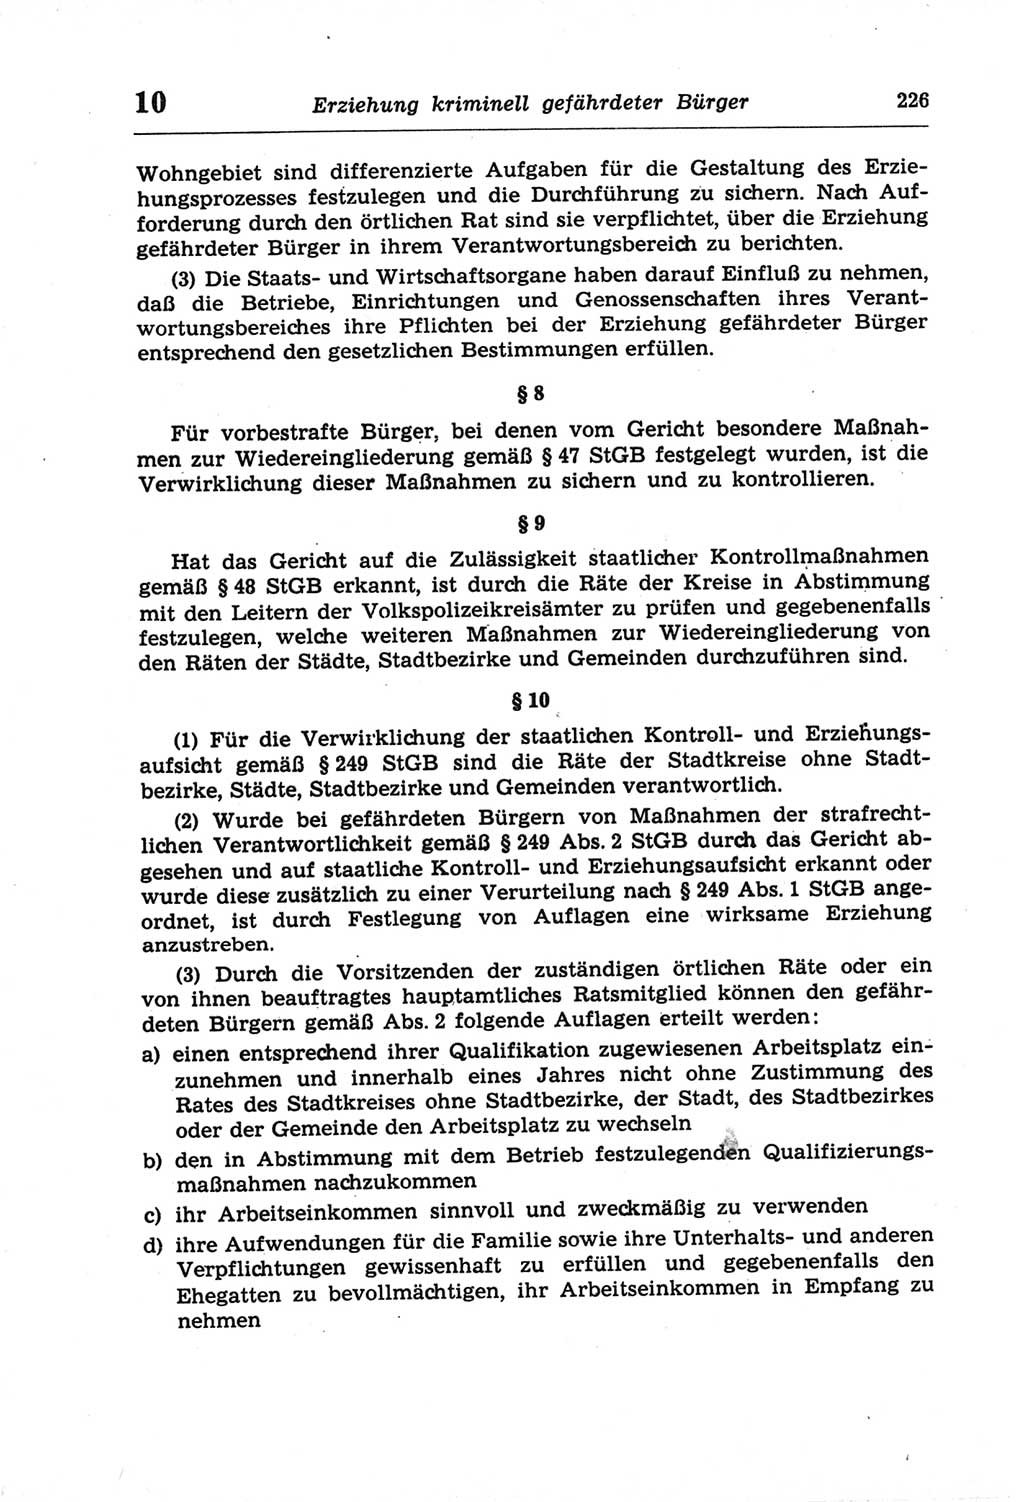 Strafprozeßordnung (StPO) der Deutschen Demokratischen Republik (DDR) und angrenzende Gesetze und Bestimmungen 1968, Seite 226 (StPO Ges. Bstgn. DDR 1968, S. 226)